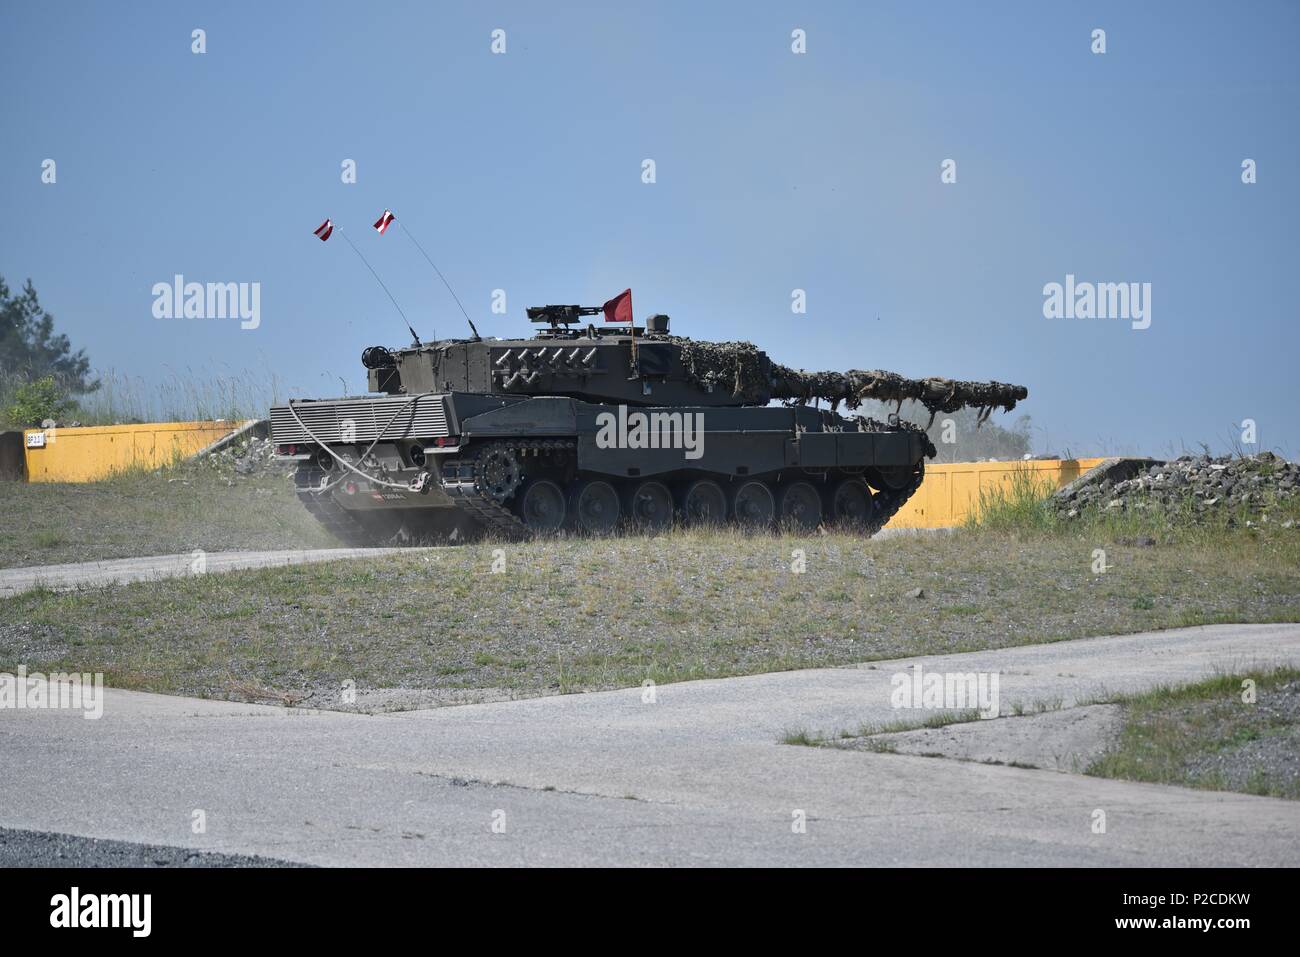 Un Autrichien Leopard 2A4 réservoir, exploité par les soldats autrichiens affecté à la 6e compagnie de chars, 14e Bataillon, les incendies à sa cible pendant l'Europe forte Défi du réservoir (CEEC), à la 7e formation de l'Armée de la commande Zone d'entraînement Grafenwoehr, Grafenwoehr, Allemagne, June 04, 2018, 4 juin 2018. L'Europe de l'armée américaine et l'armée allemande co-hôte de la troisième Europe forte Défi Réservoir à Grafenwoehr Secteur d'entraînement, 3 juin - 8, 2018. L'Europe forte Tank est un événement annuel de formation conçus pour donner aux pays participants une dynamique, productif et agréable pour favoriser la partie militaire Banque D'Images